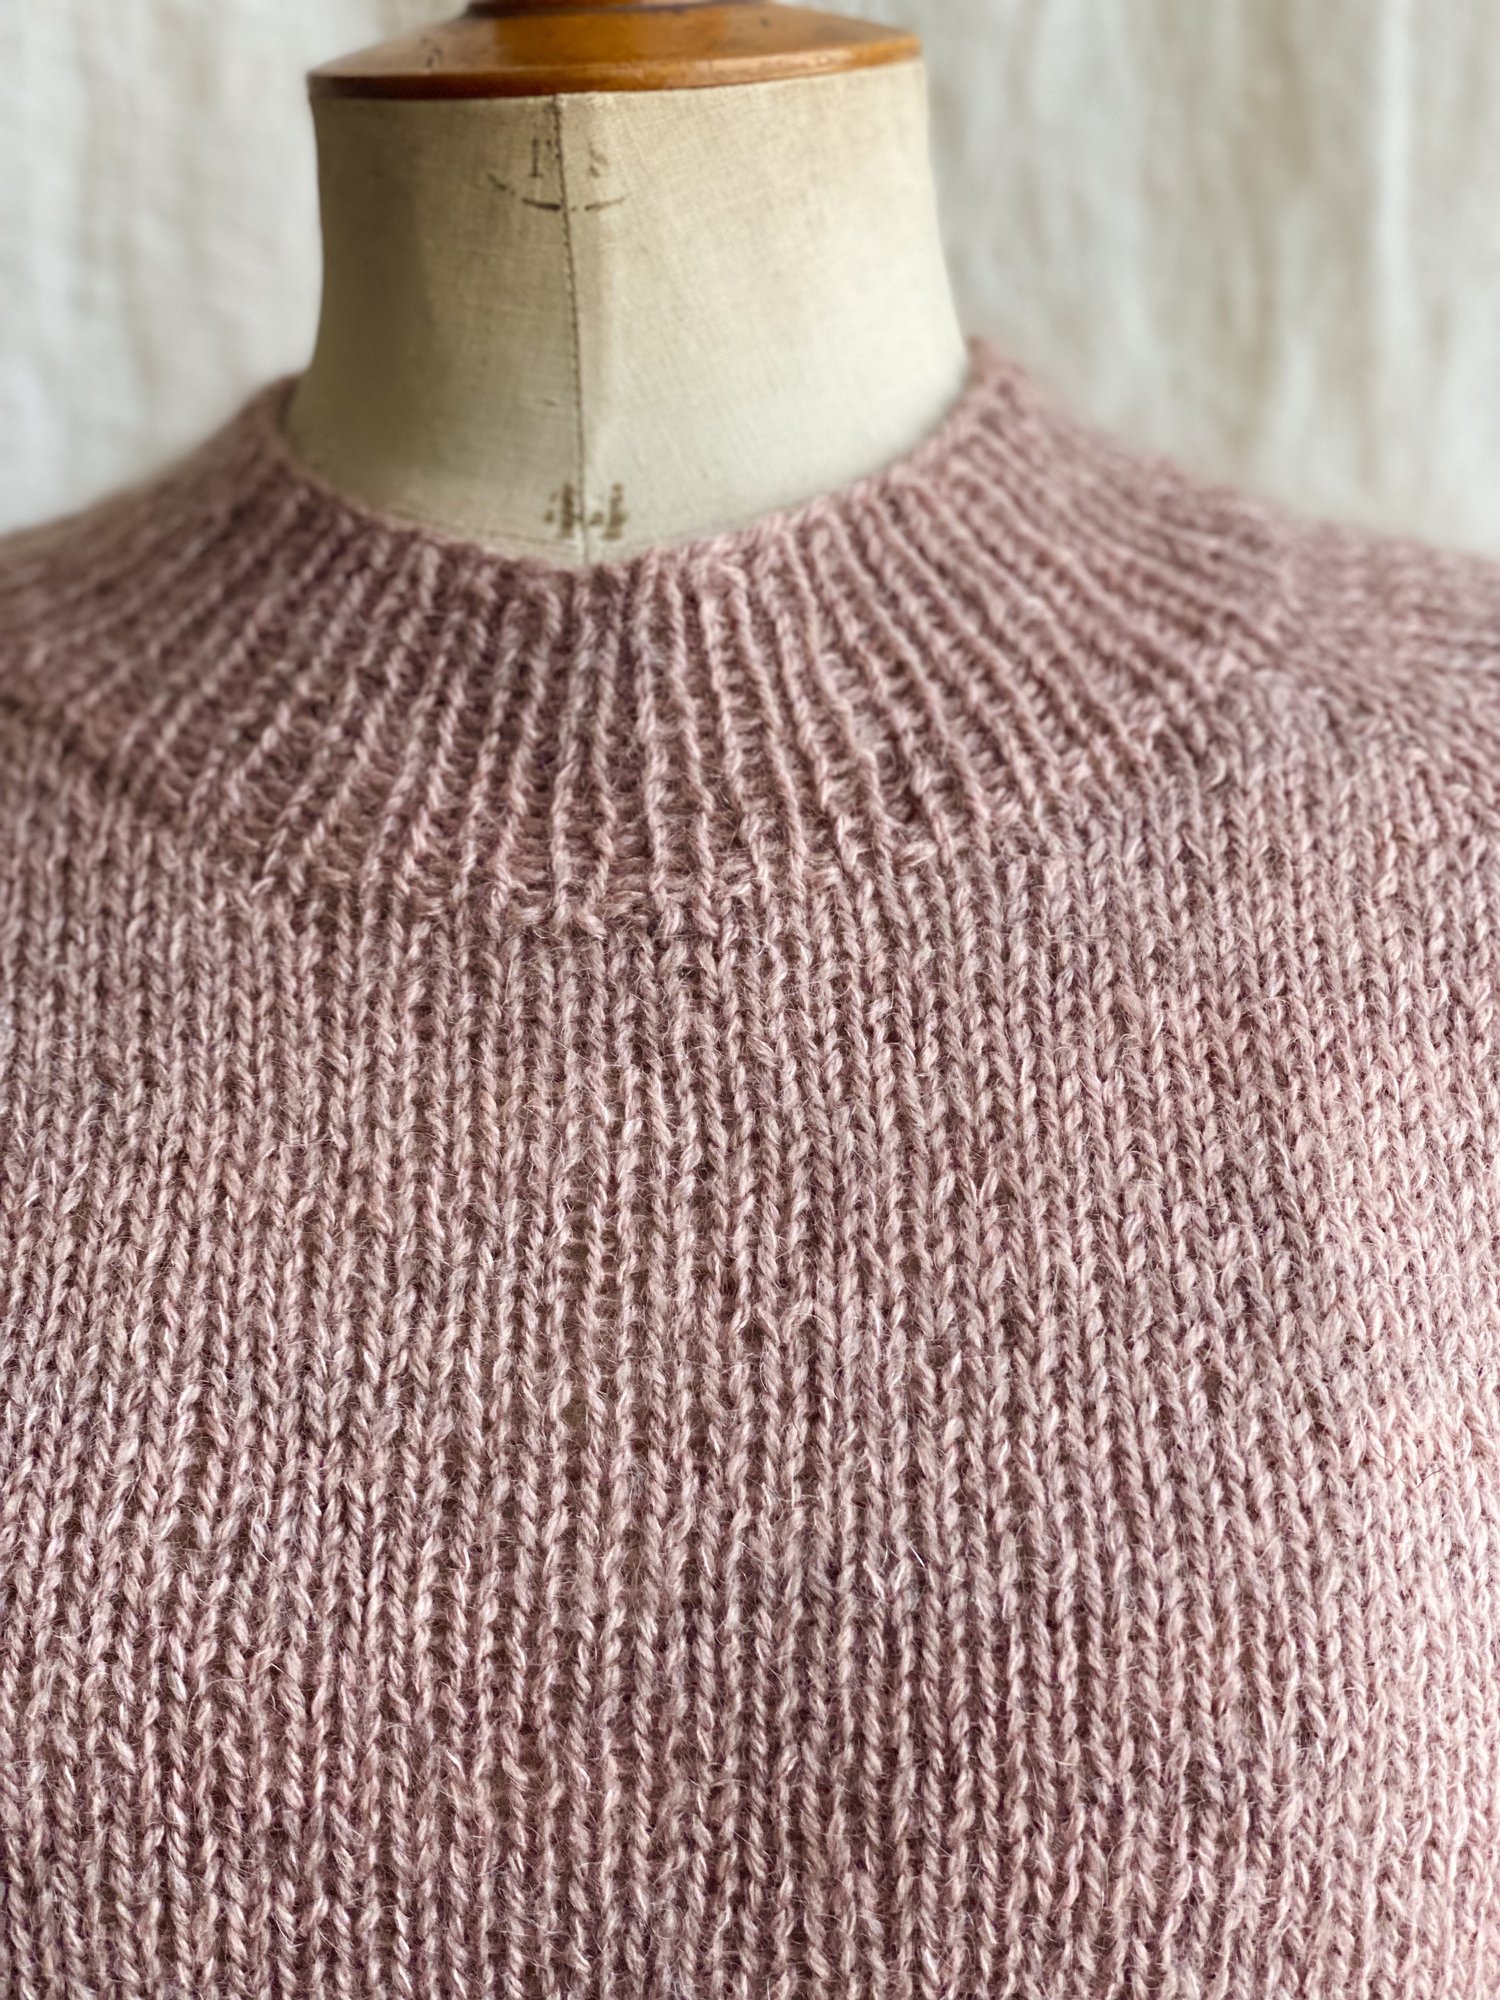 FabricLink :: Sweater Knit & Yarn Resource